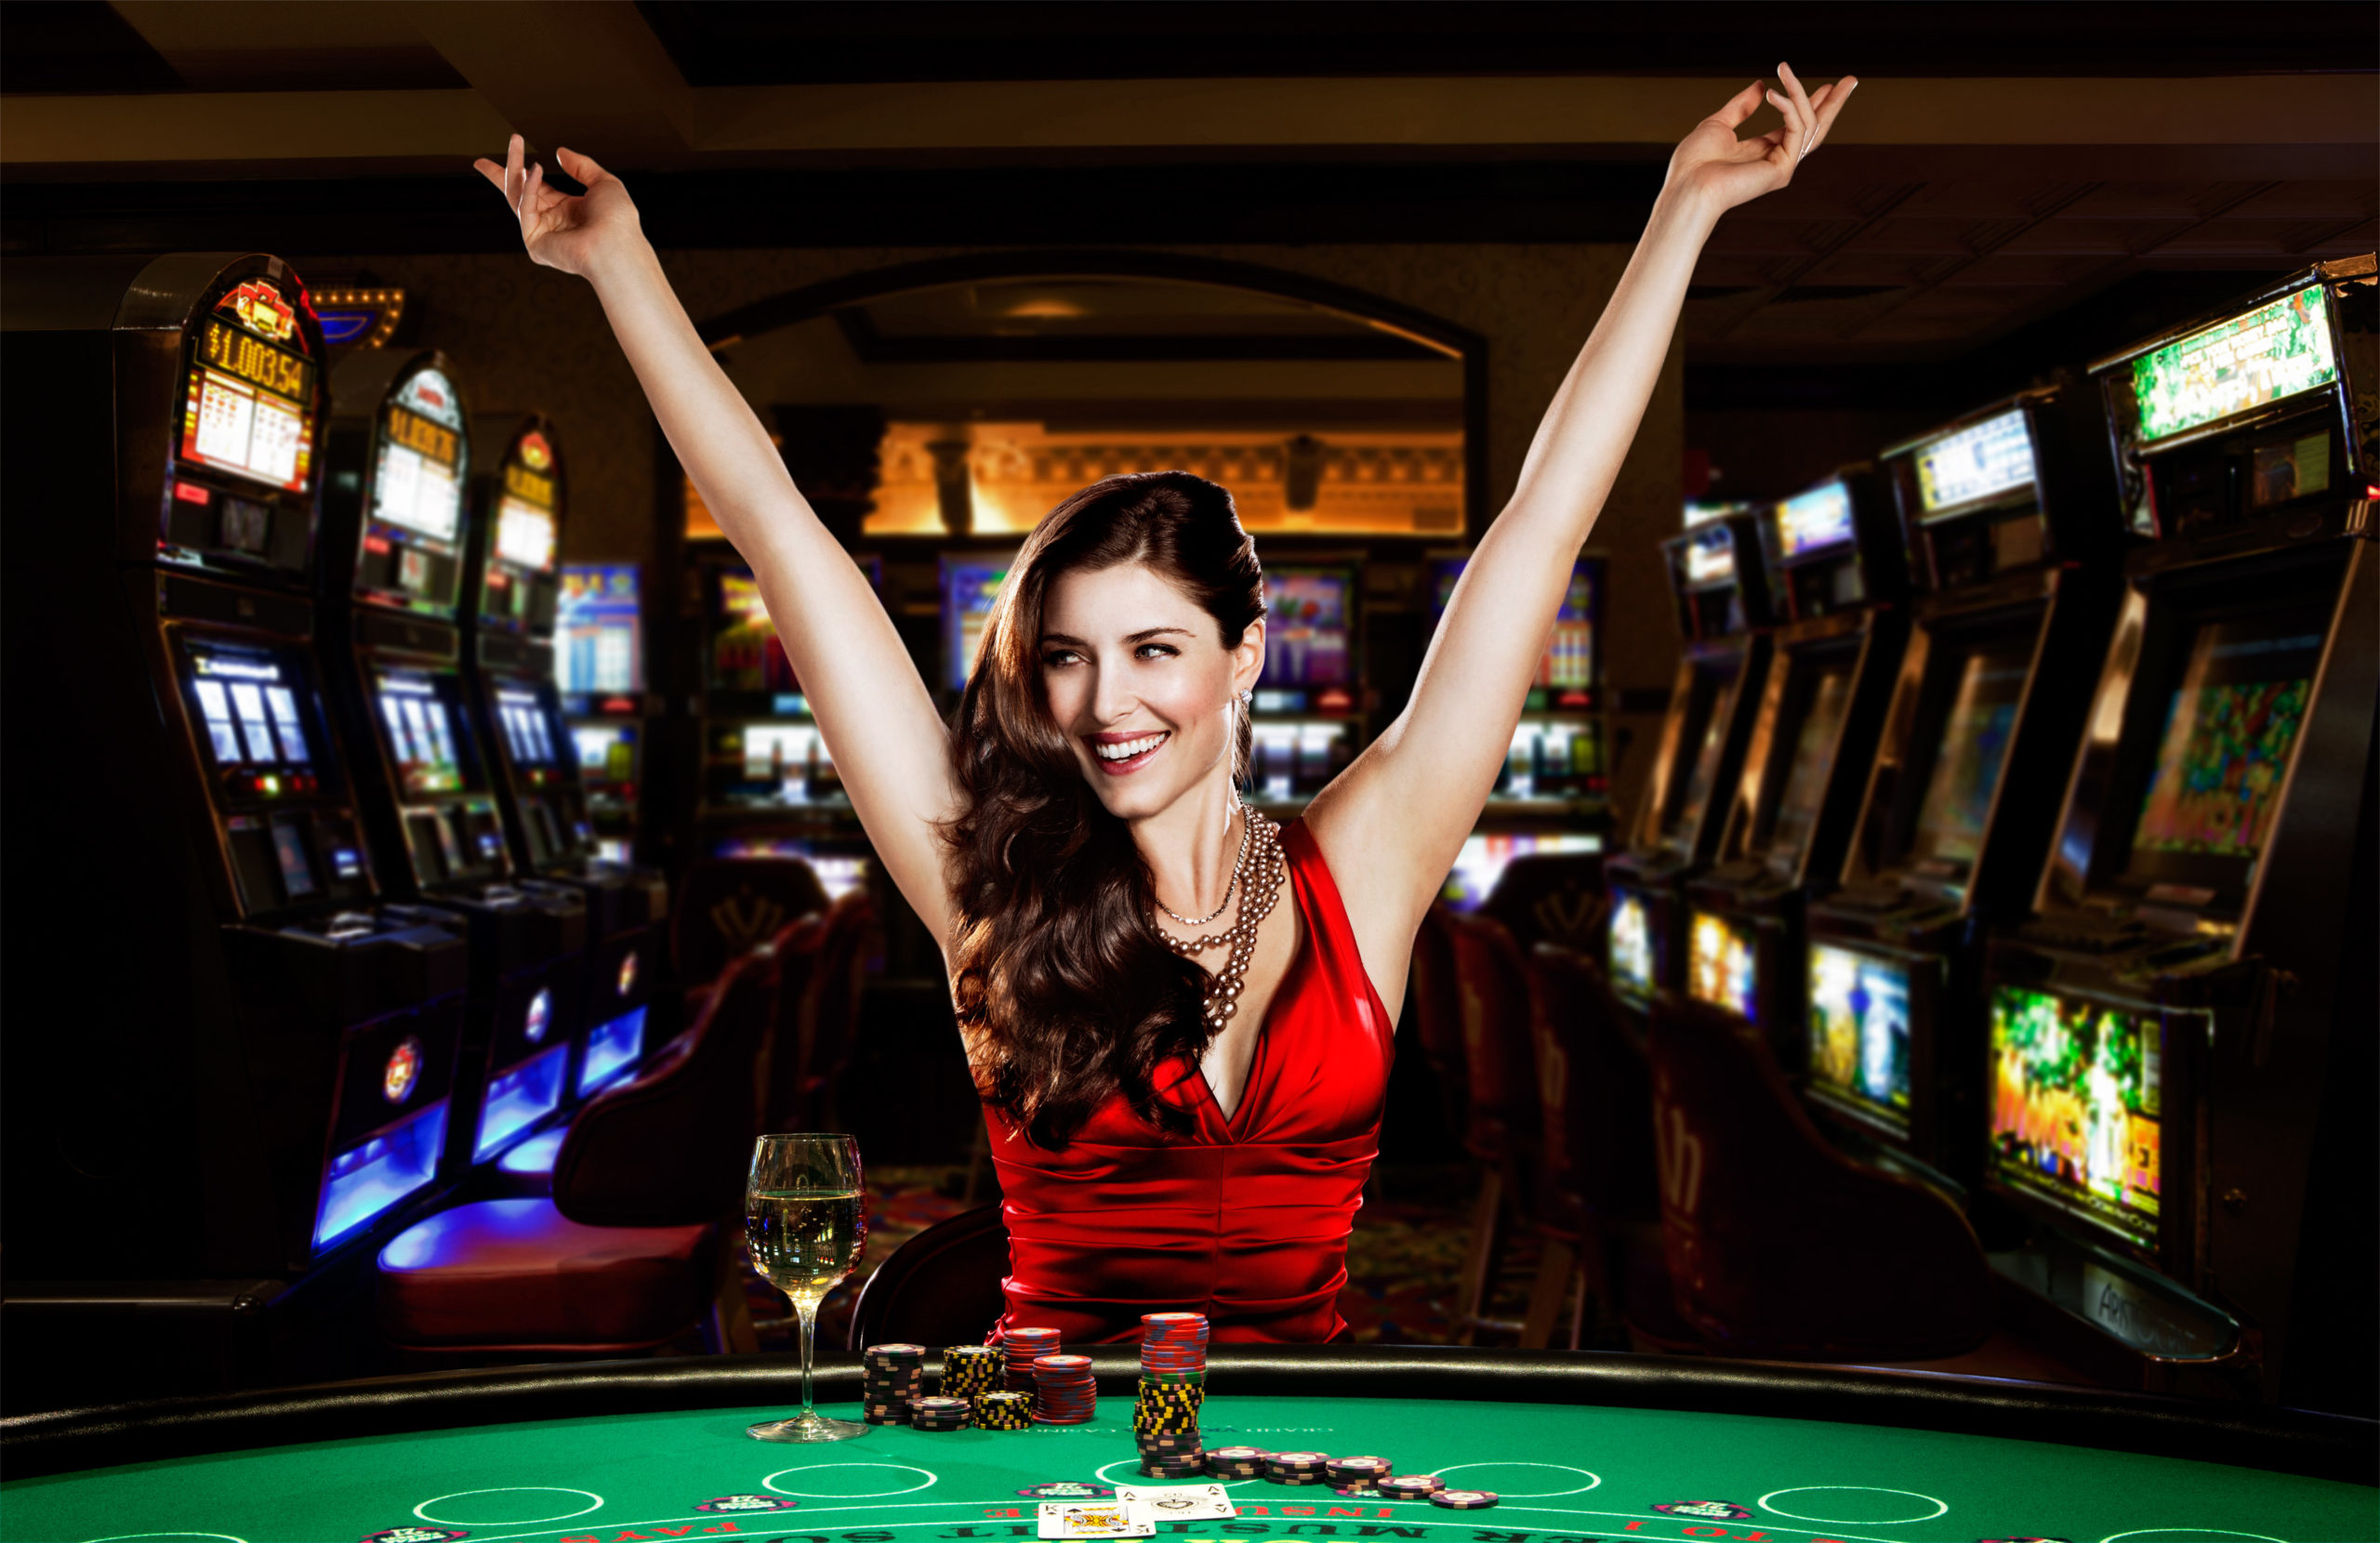 Boii casino pokerdom официальный покердом оффикиал клуб